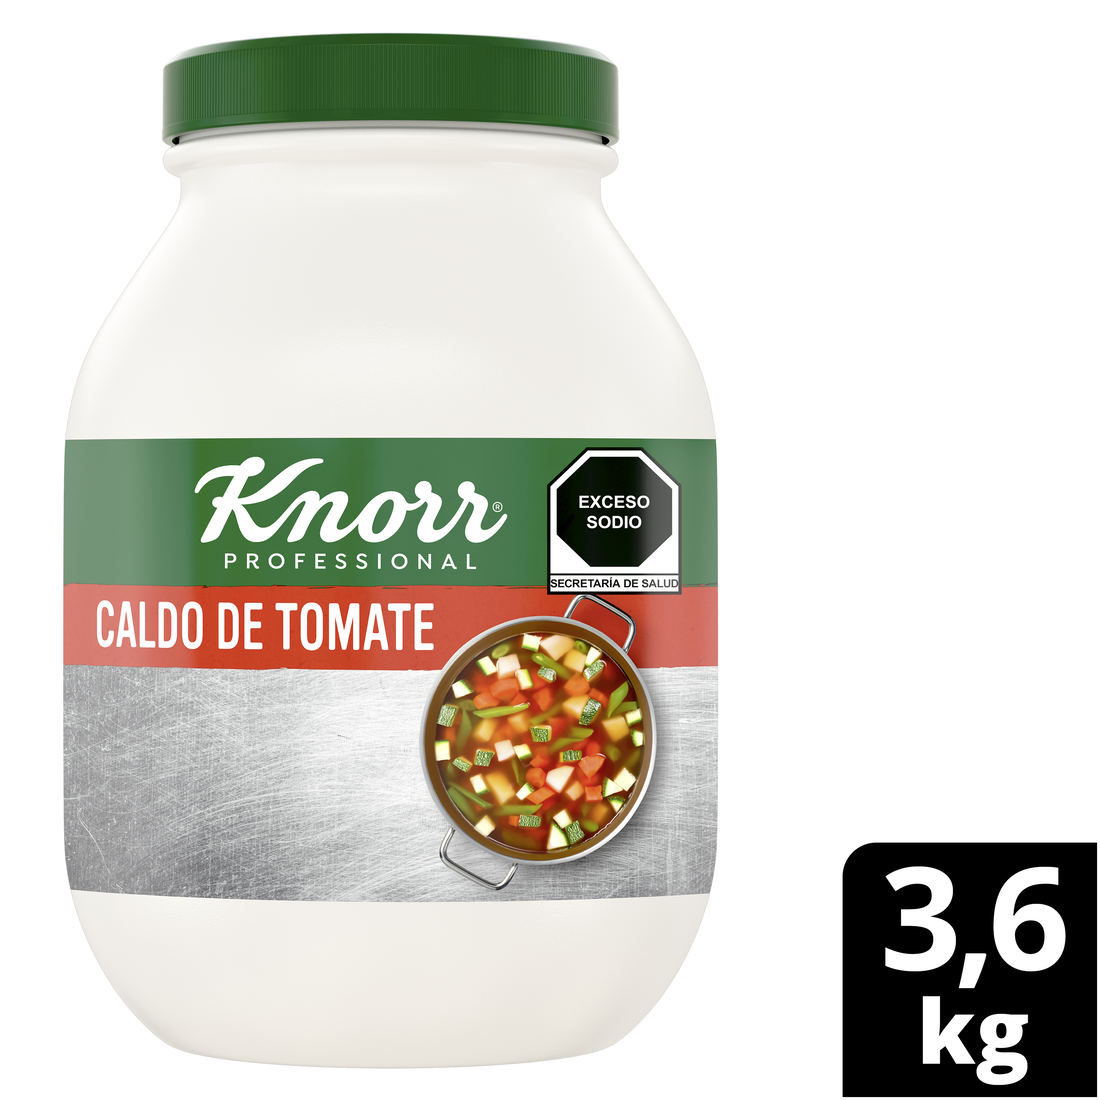 Knorr® Professional Caldo de Tomate 3,6 Kg - Con ingredientes cultivados de manera sustentable PARA CHEFS